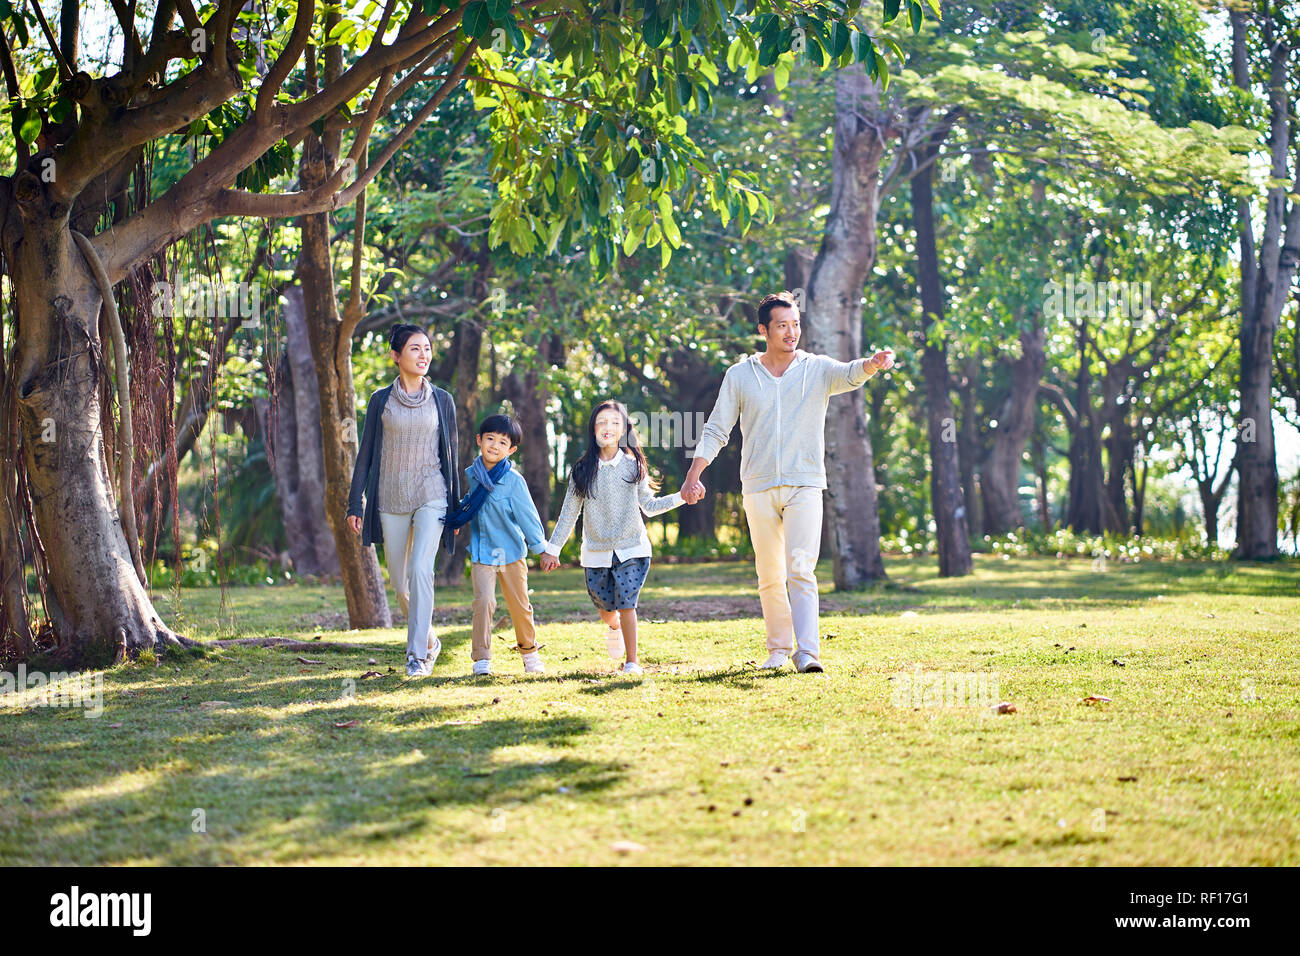 Famille avec deux enfants asiatiques marche main dans la main à l'extérieur dans le parc. Banque D'Images